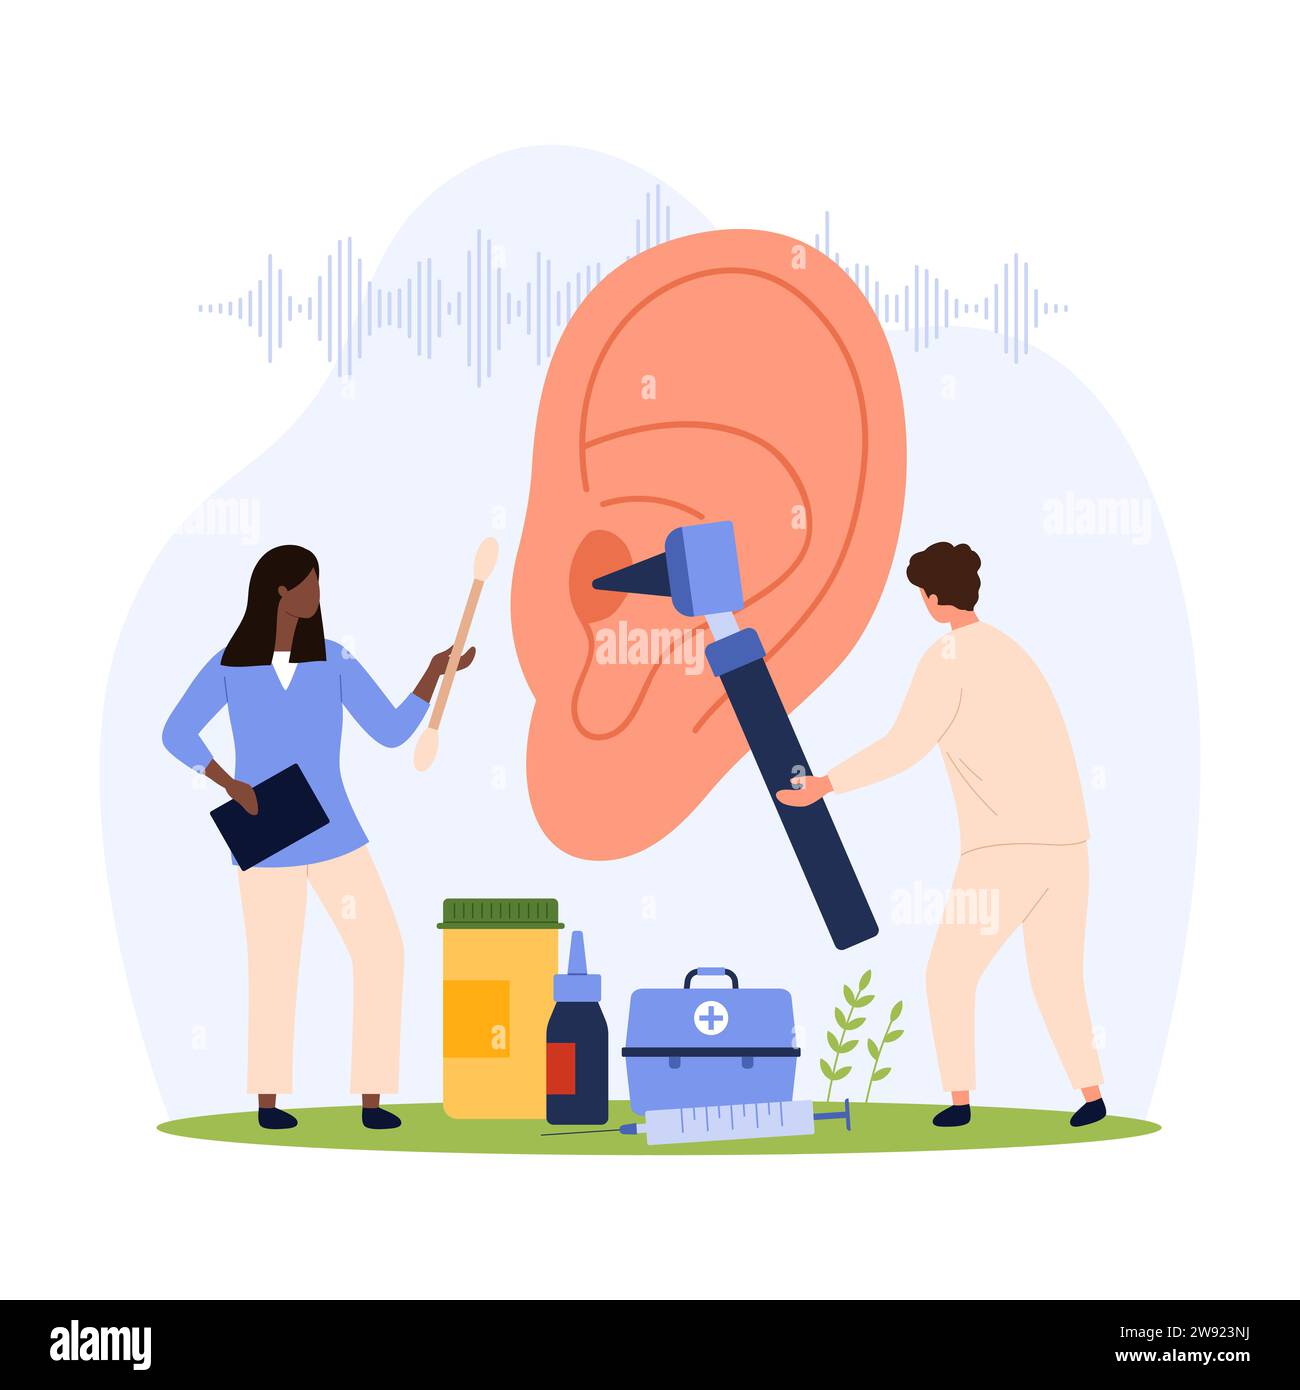 Ohrgesundheit, HNO-Aryngologie-Kontrollvektorillustration. Cartoon Tiny People überprüfen das Hören mit Otoskop, Behandlung von Ohrenschmerzen, Infektion und Hörverlust durch HNO-Arzt mit Krankenhausausrüstung Stock Vektor